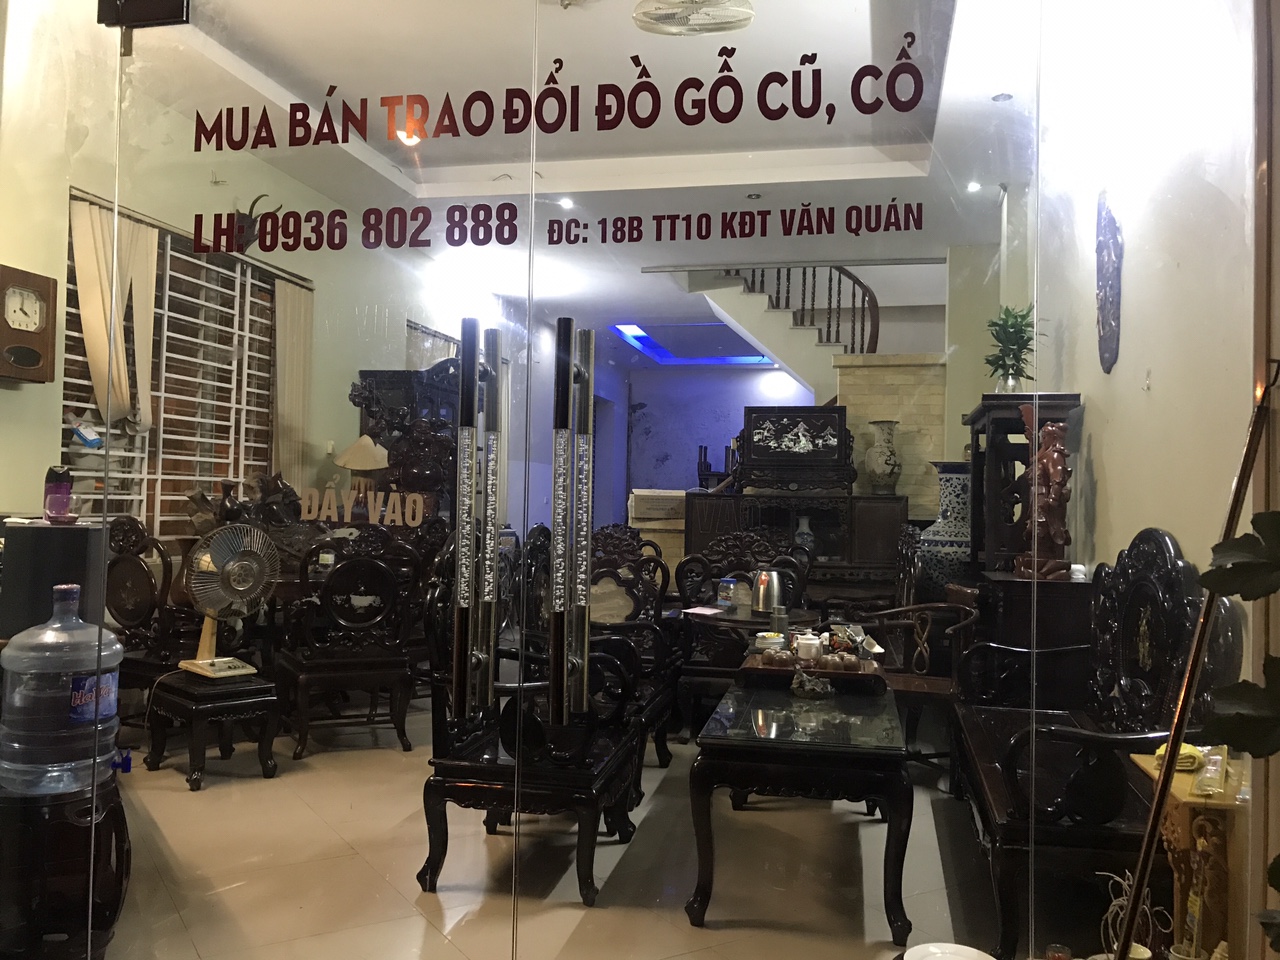 Địa chỉ mua đồ gỗ cũ tỉnh Hà Nội đáp ứng mọi nhu cầu 1 Địa chỉ mua đồ gỗ cũ tỉnh Hà Nội đáp ứng mọi nhu cầu